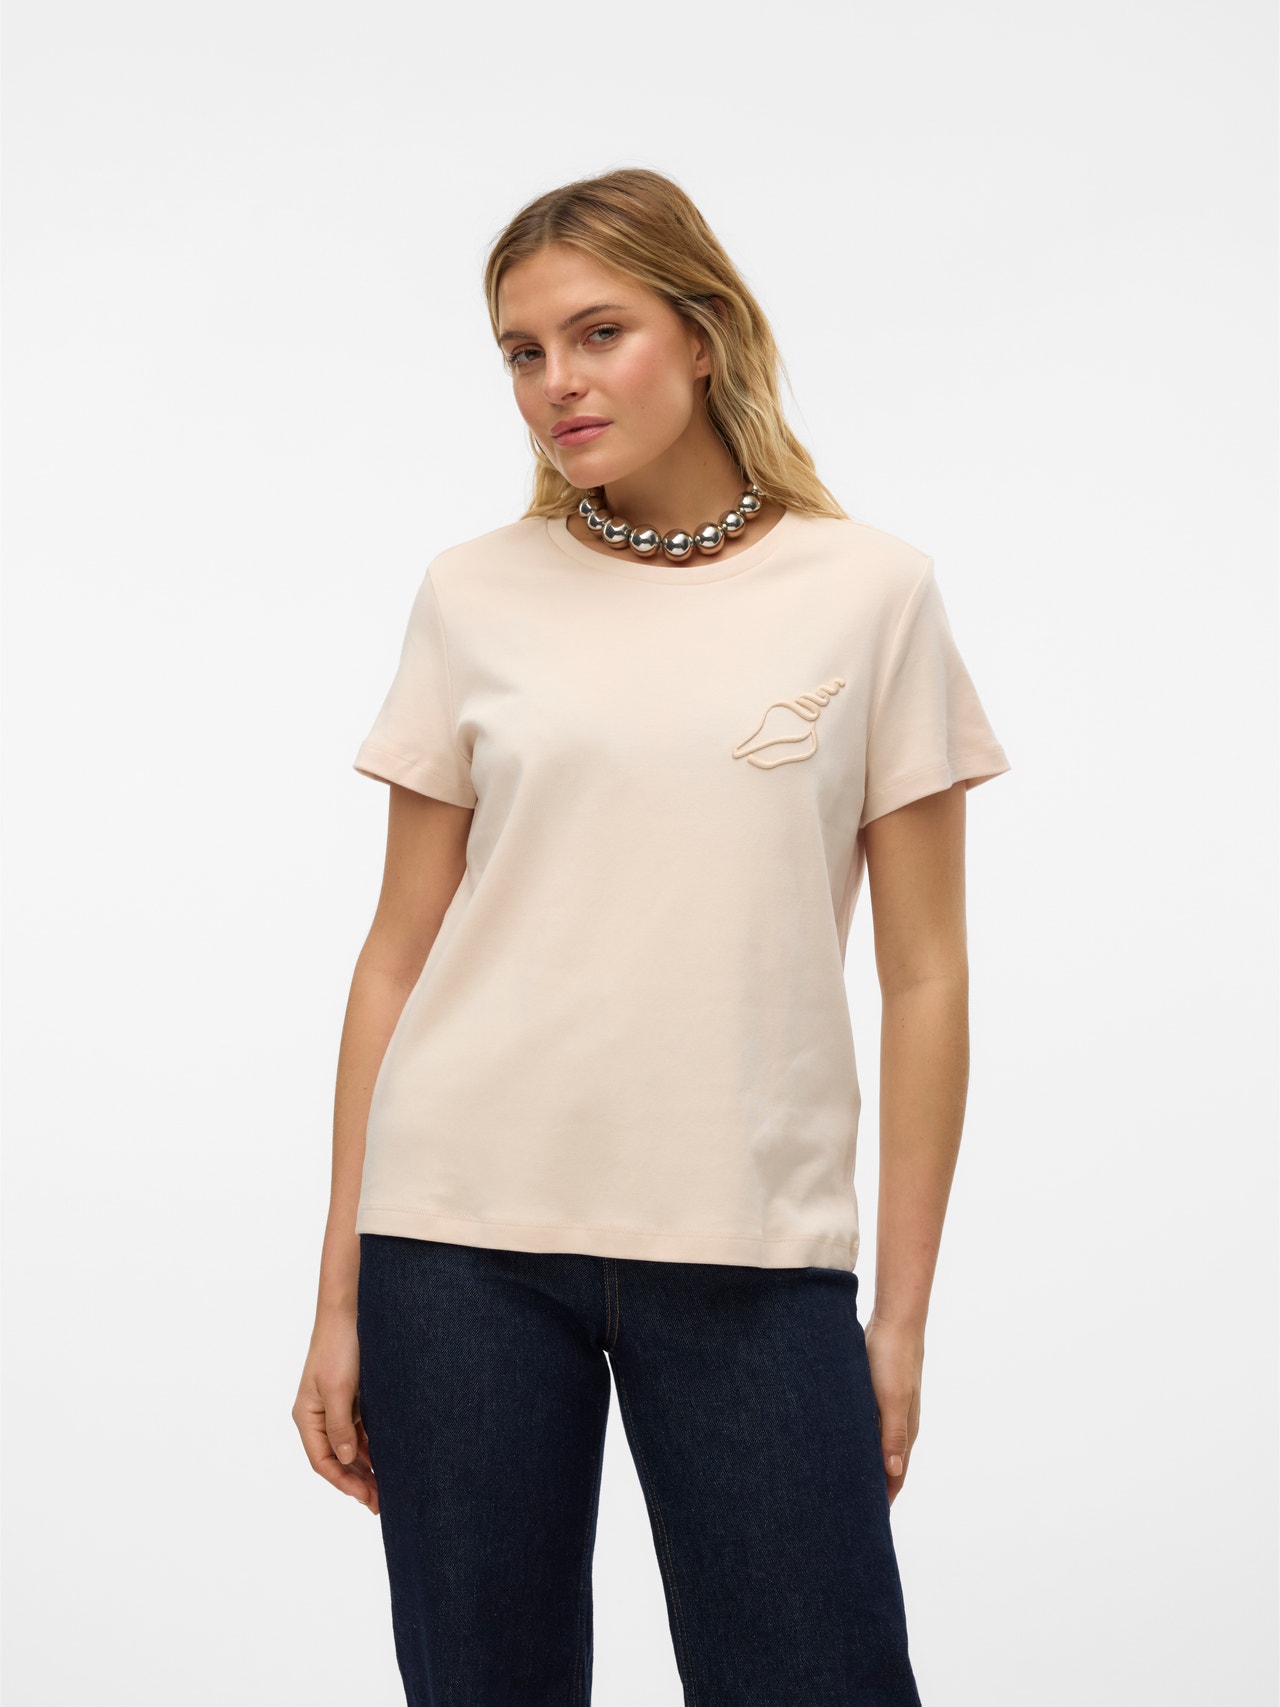 Vero Moda VMFRANCIS T-shirt -Sand Dollar - 10312598